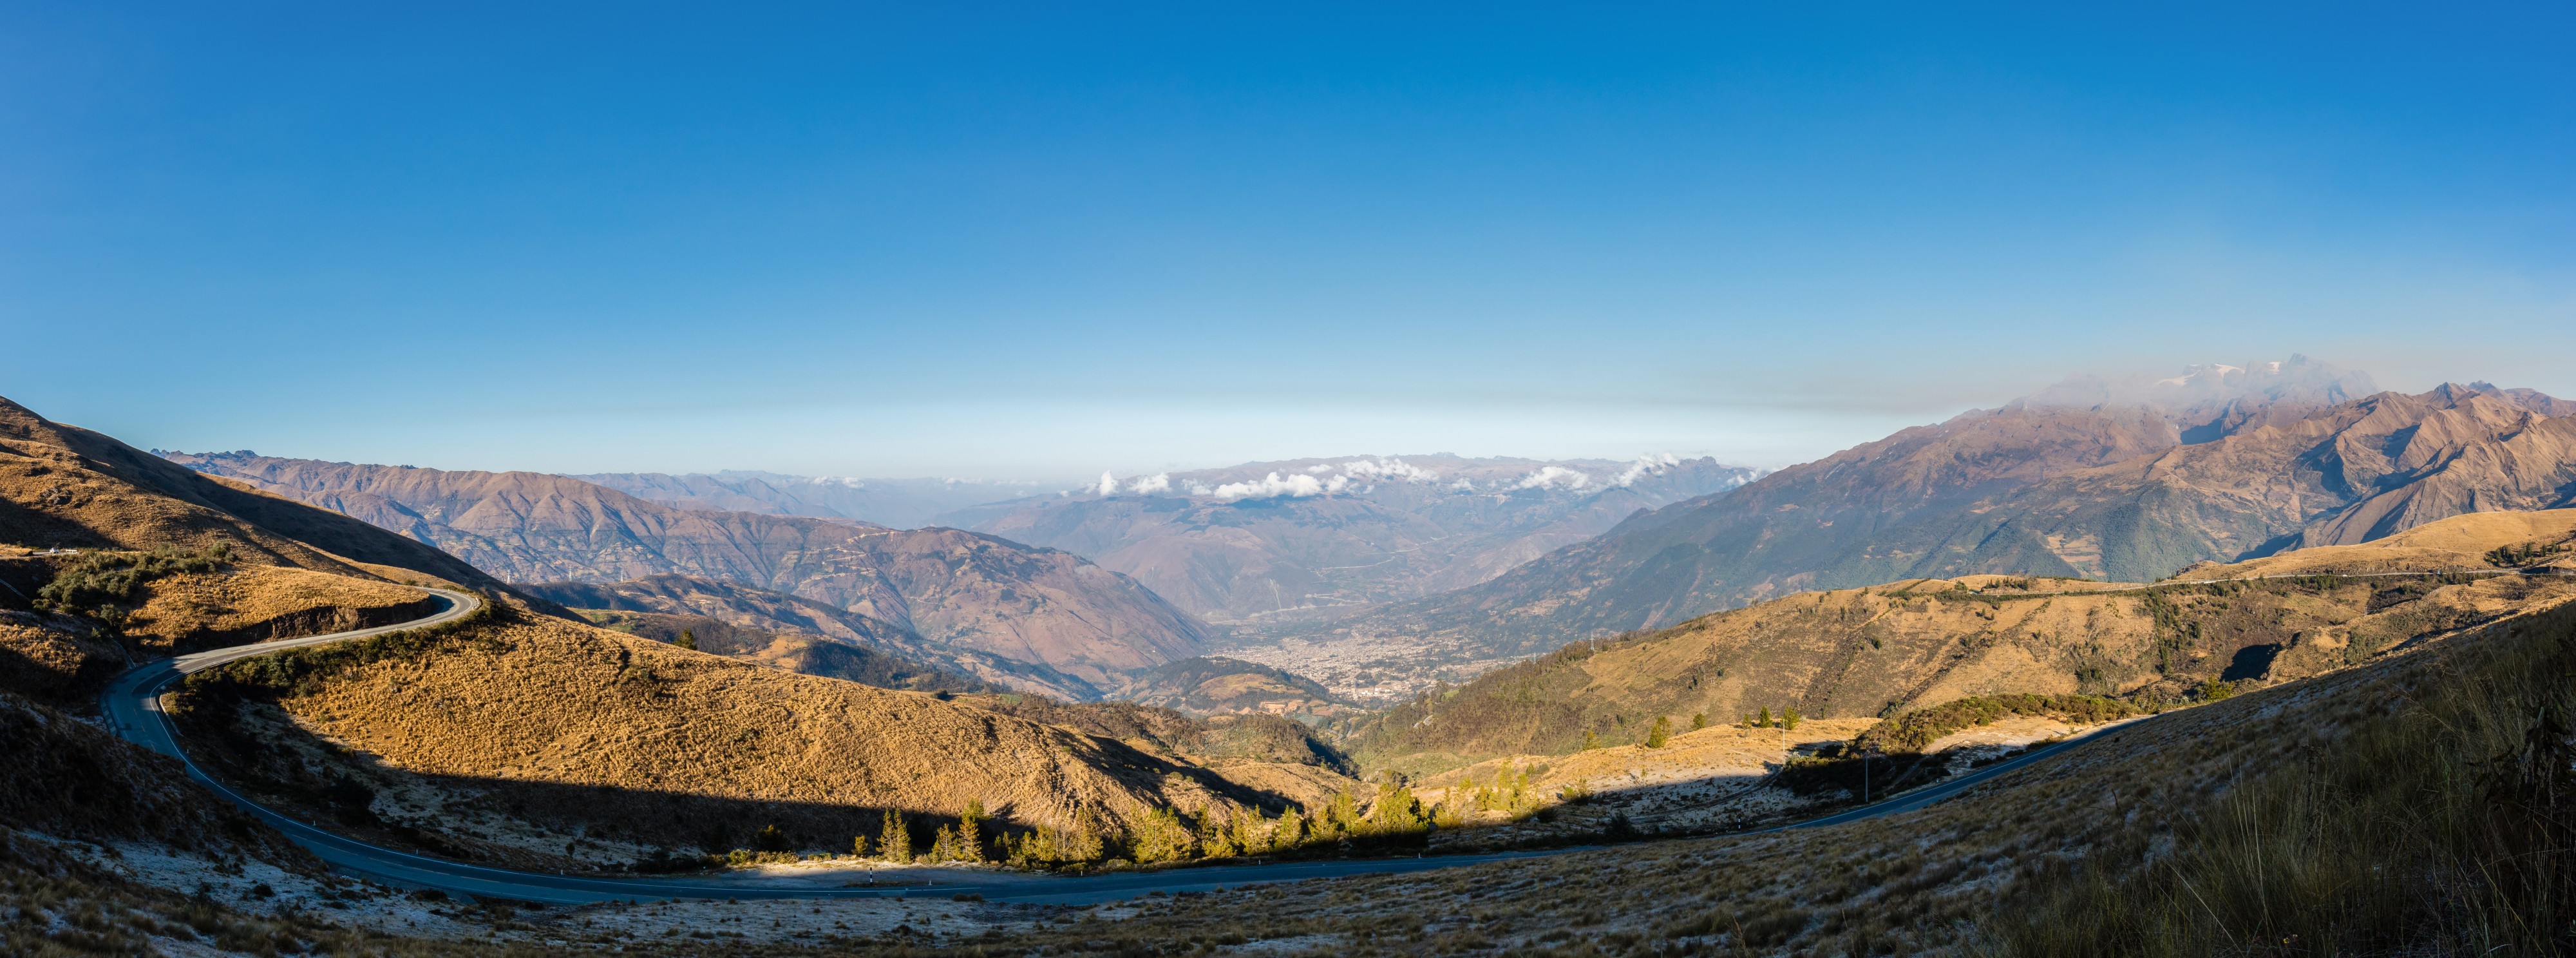 Vista de los Andes, Abancay, Perú, 2015-07-30, DD 69-71 PAN